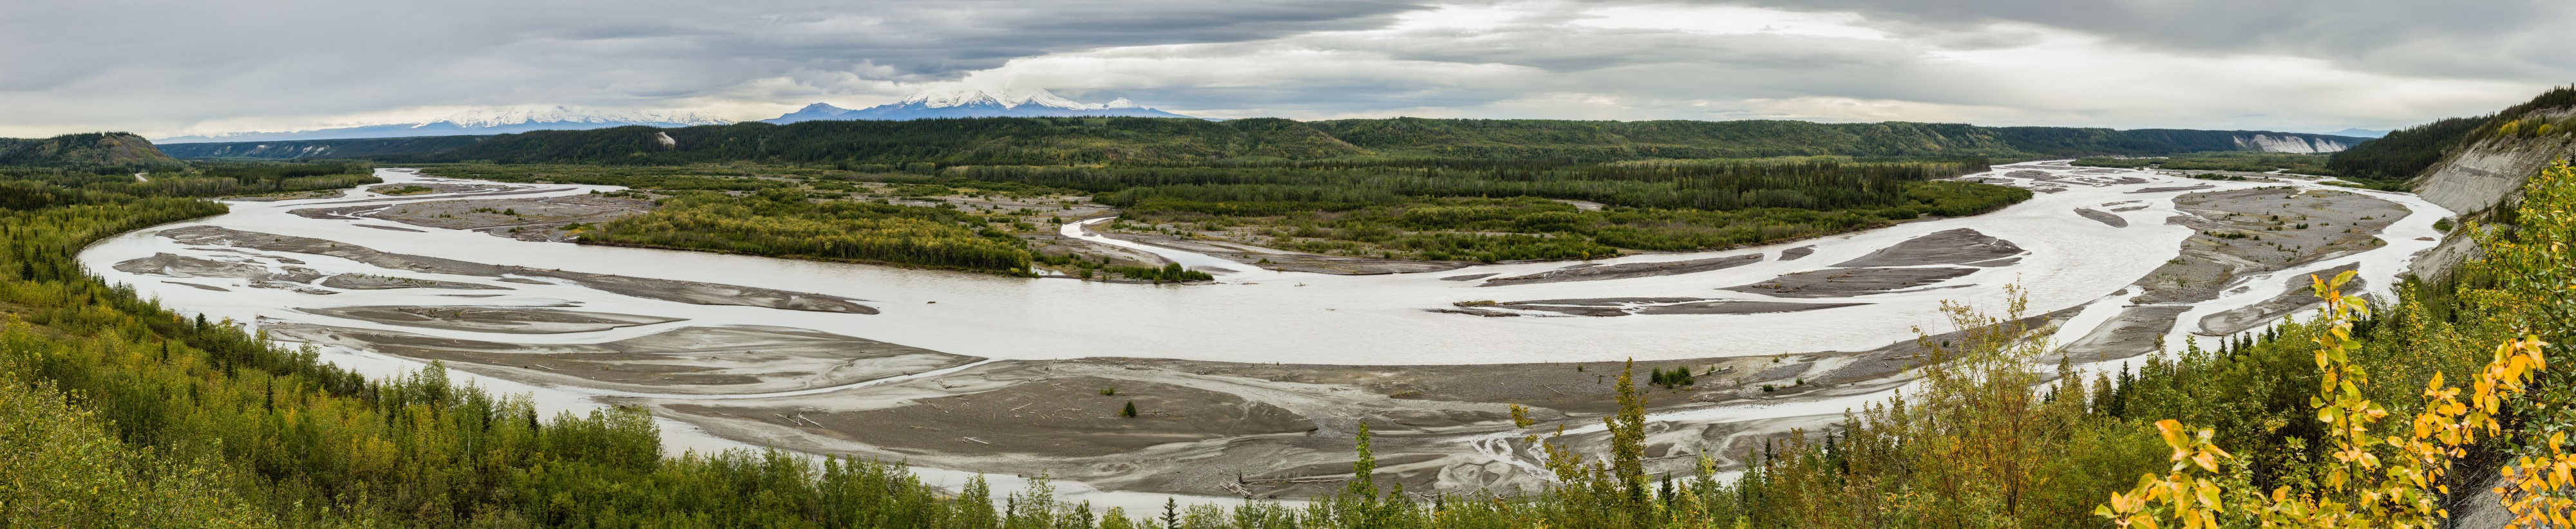 Río Copper, Glennallen, Alaska, Estados Unidos, 2017-08-24, DD 03-09 PAN